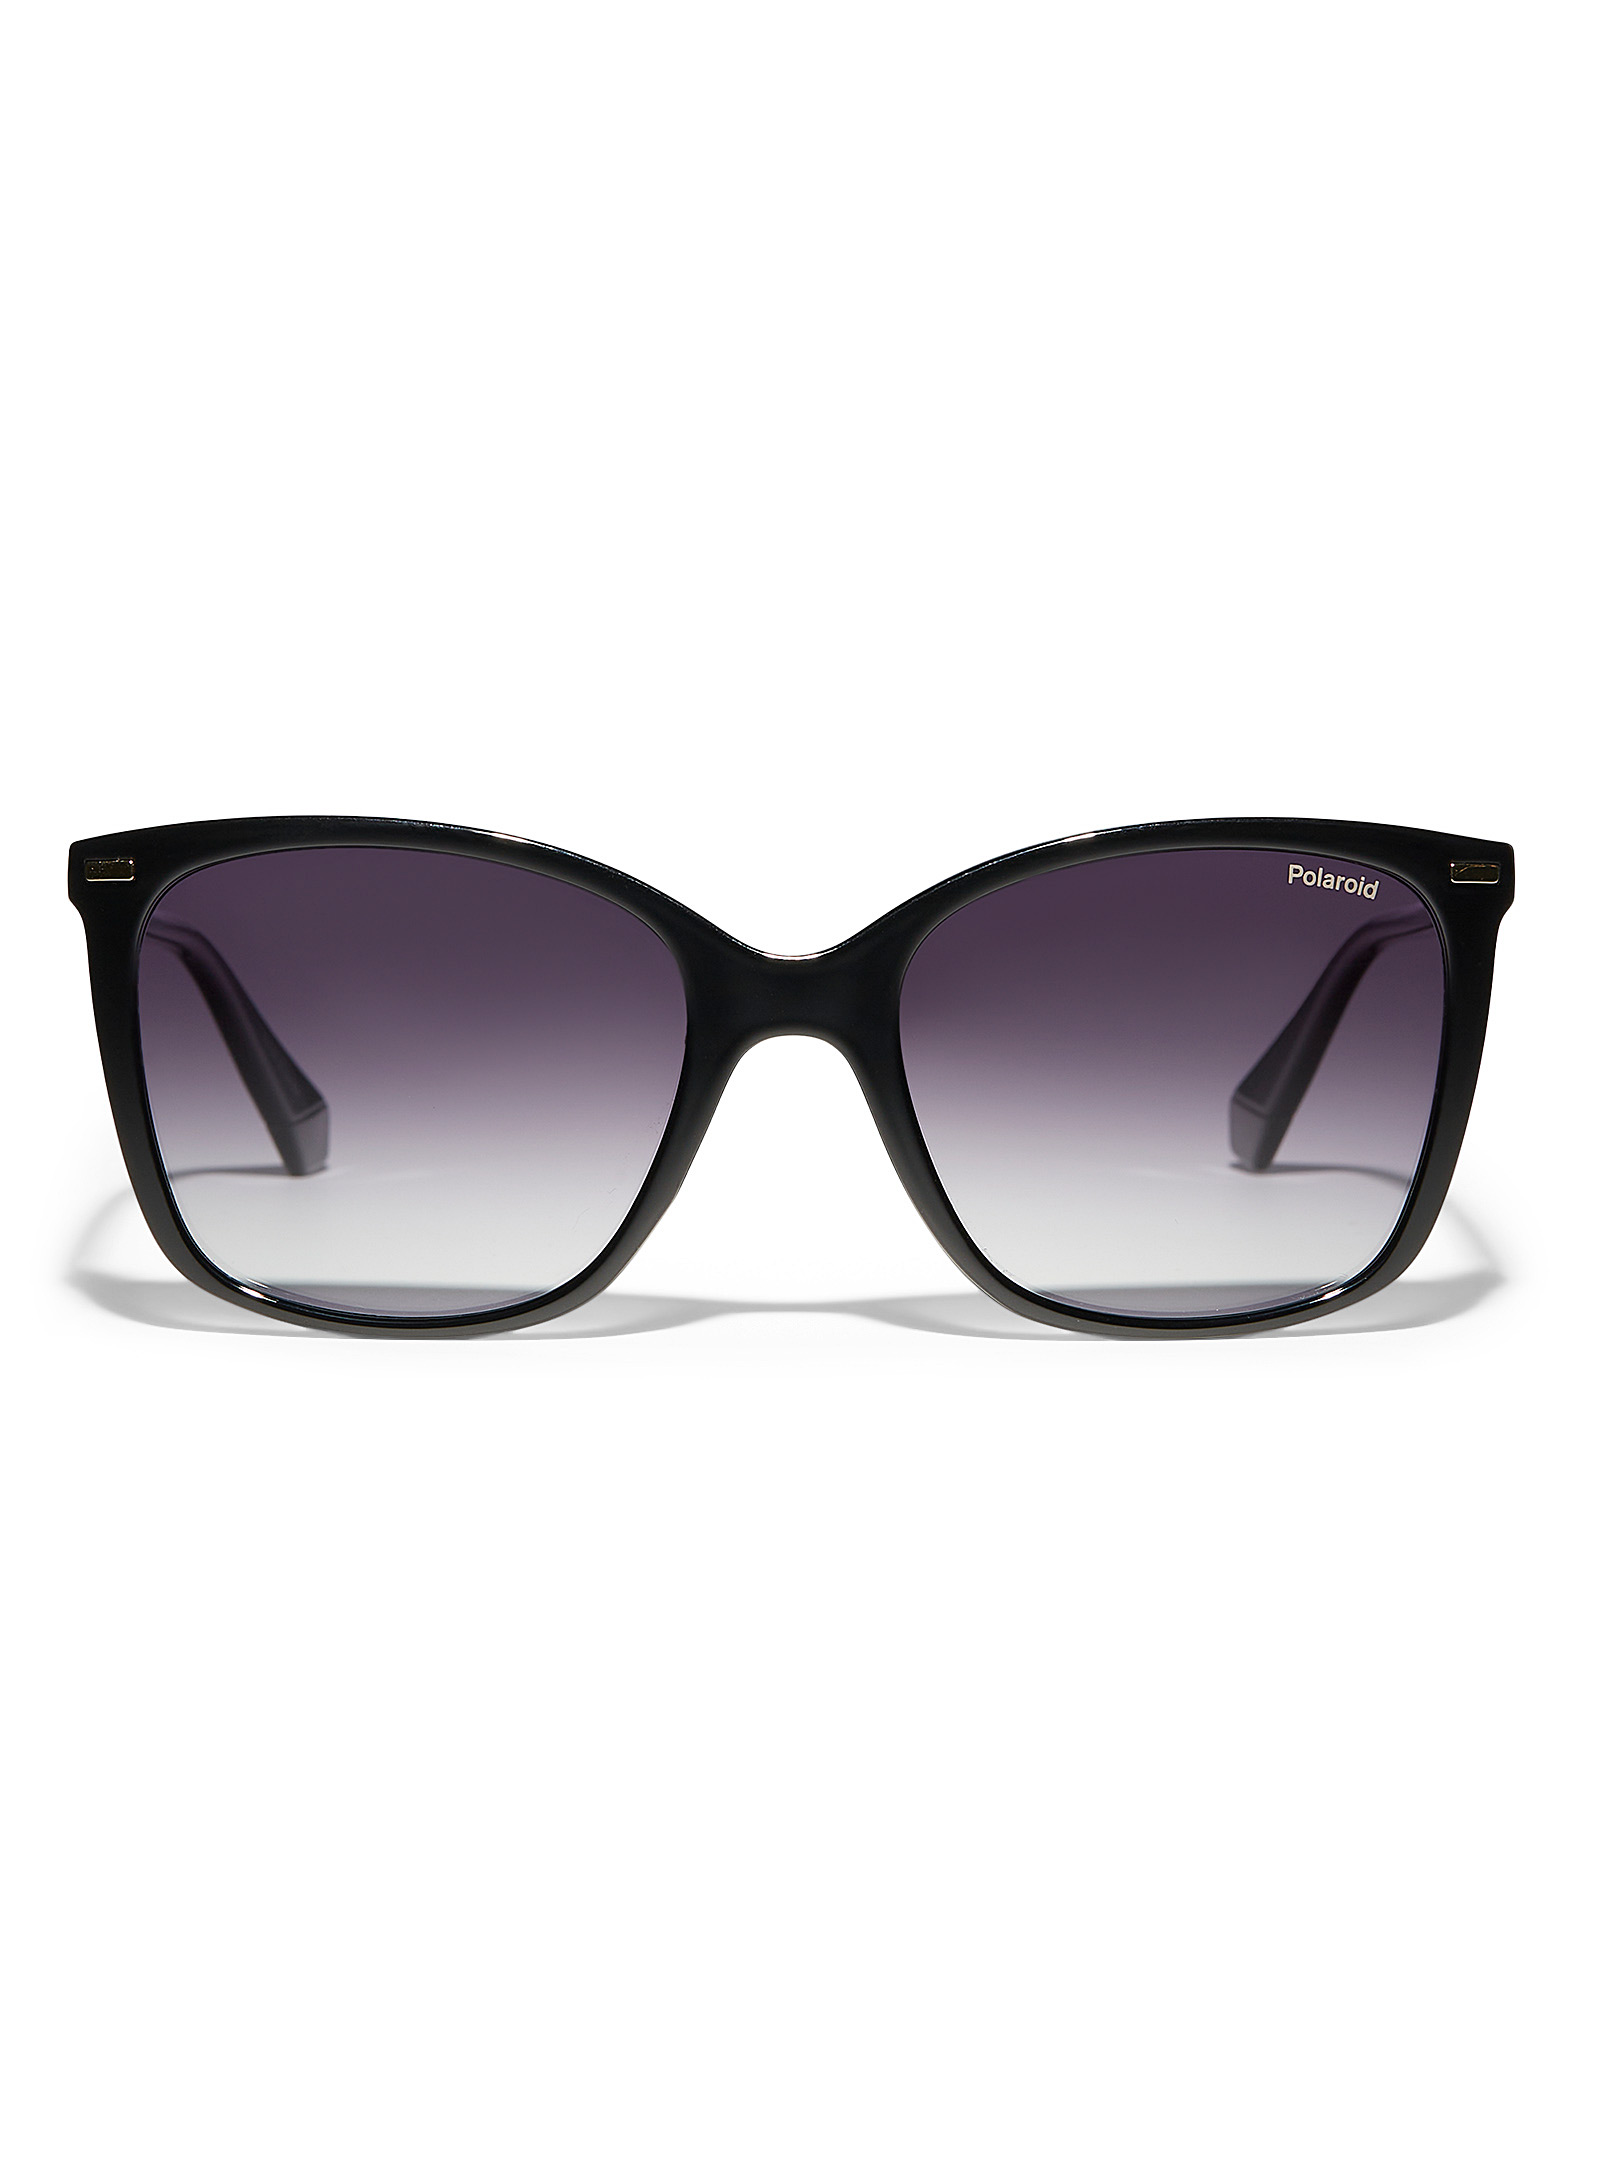 Polaroid Rectangular Sunglasses In Black